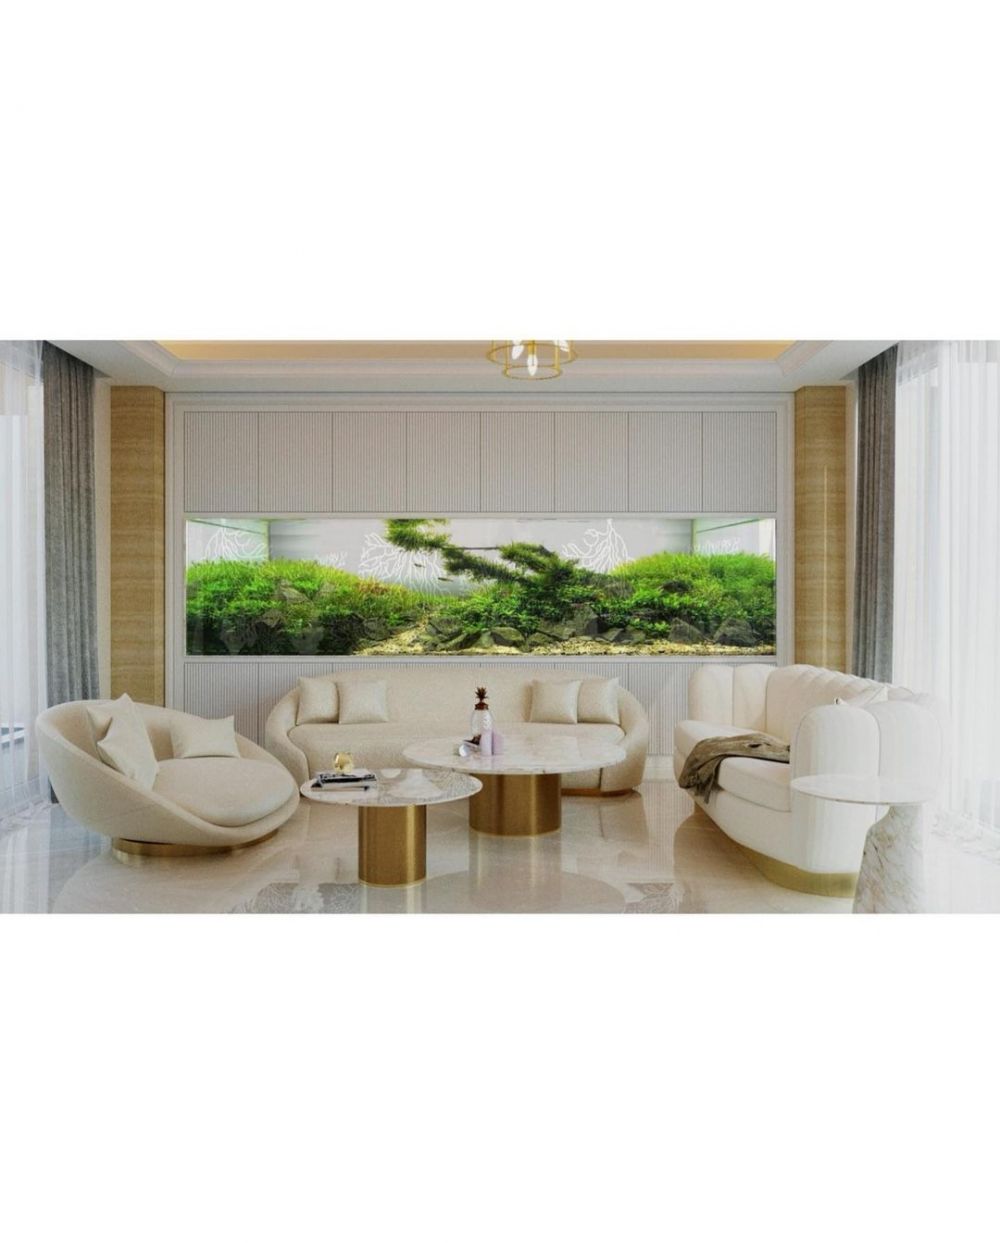 9 Potret desain interior rumah baru Ayu Dewi, elegan bernuansa putih